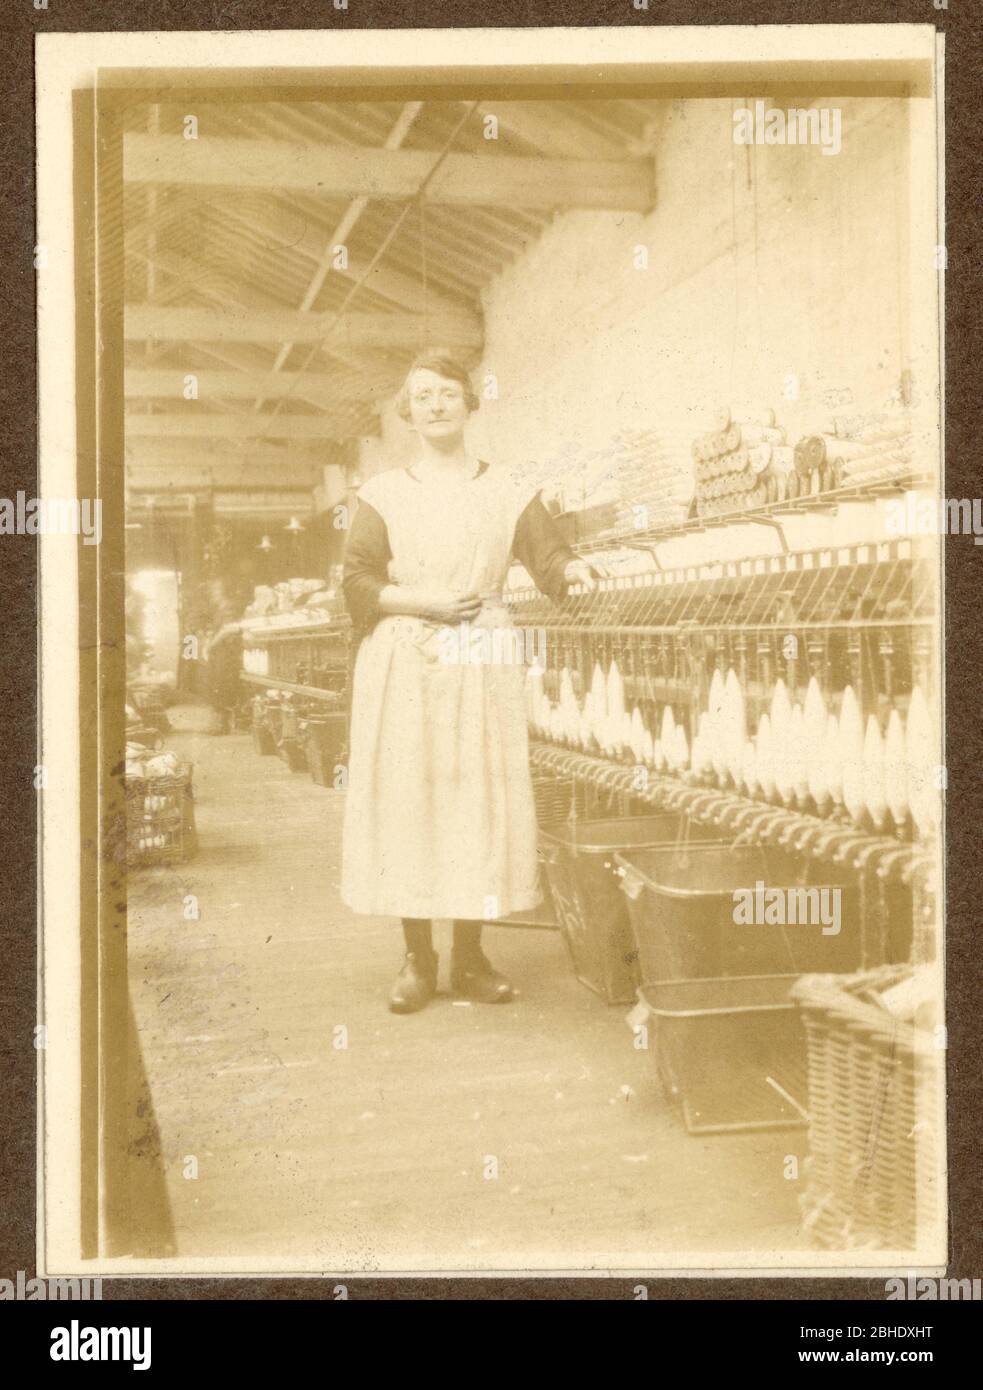 Photo du début des années 1900 de la tournette de coton du Lancashire, située à côté d'une mule en rotation dans un moulin à coton, portant des sabots, Radcliffe, Lancashire, Royaume-Uni vers 1917 Banque D'Images